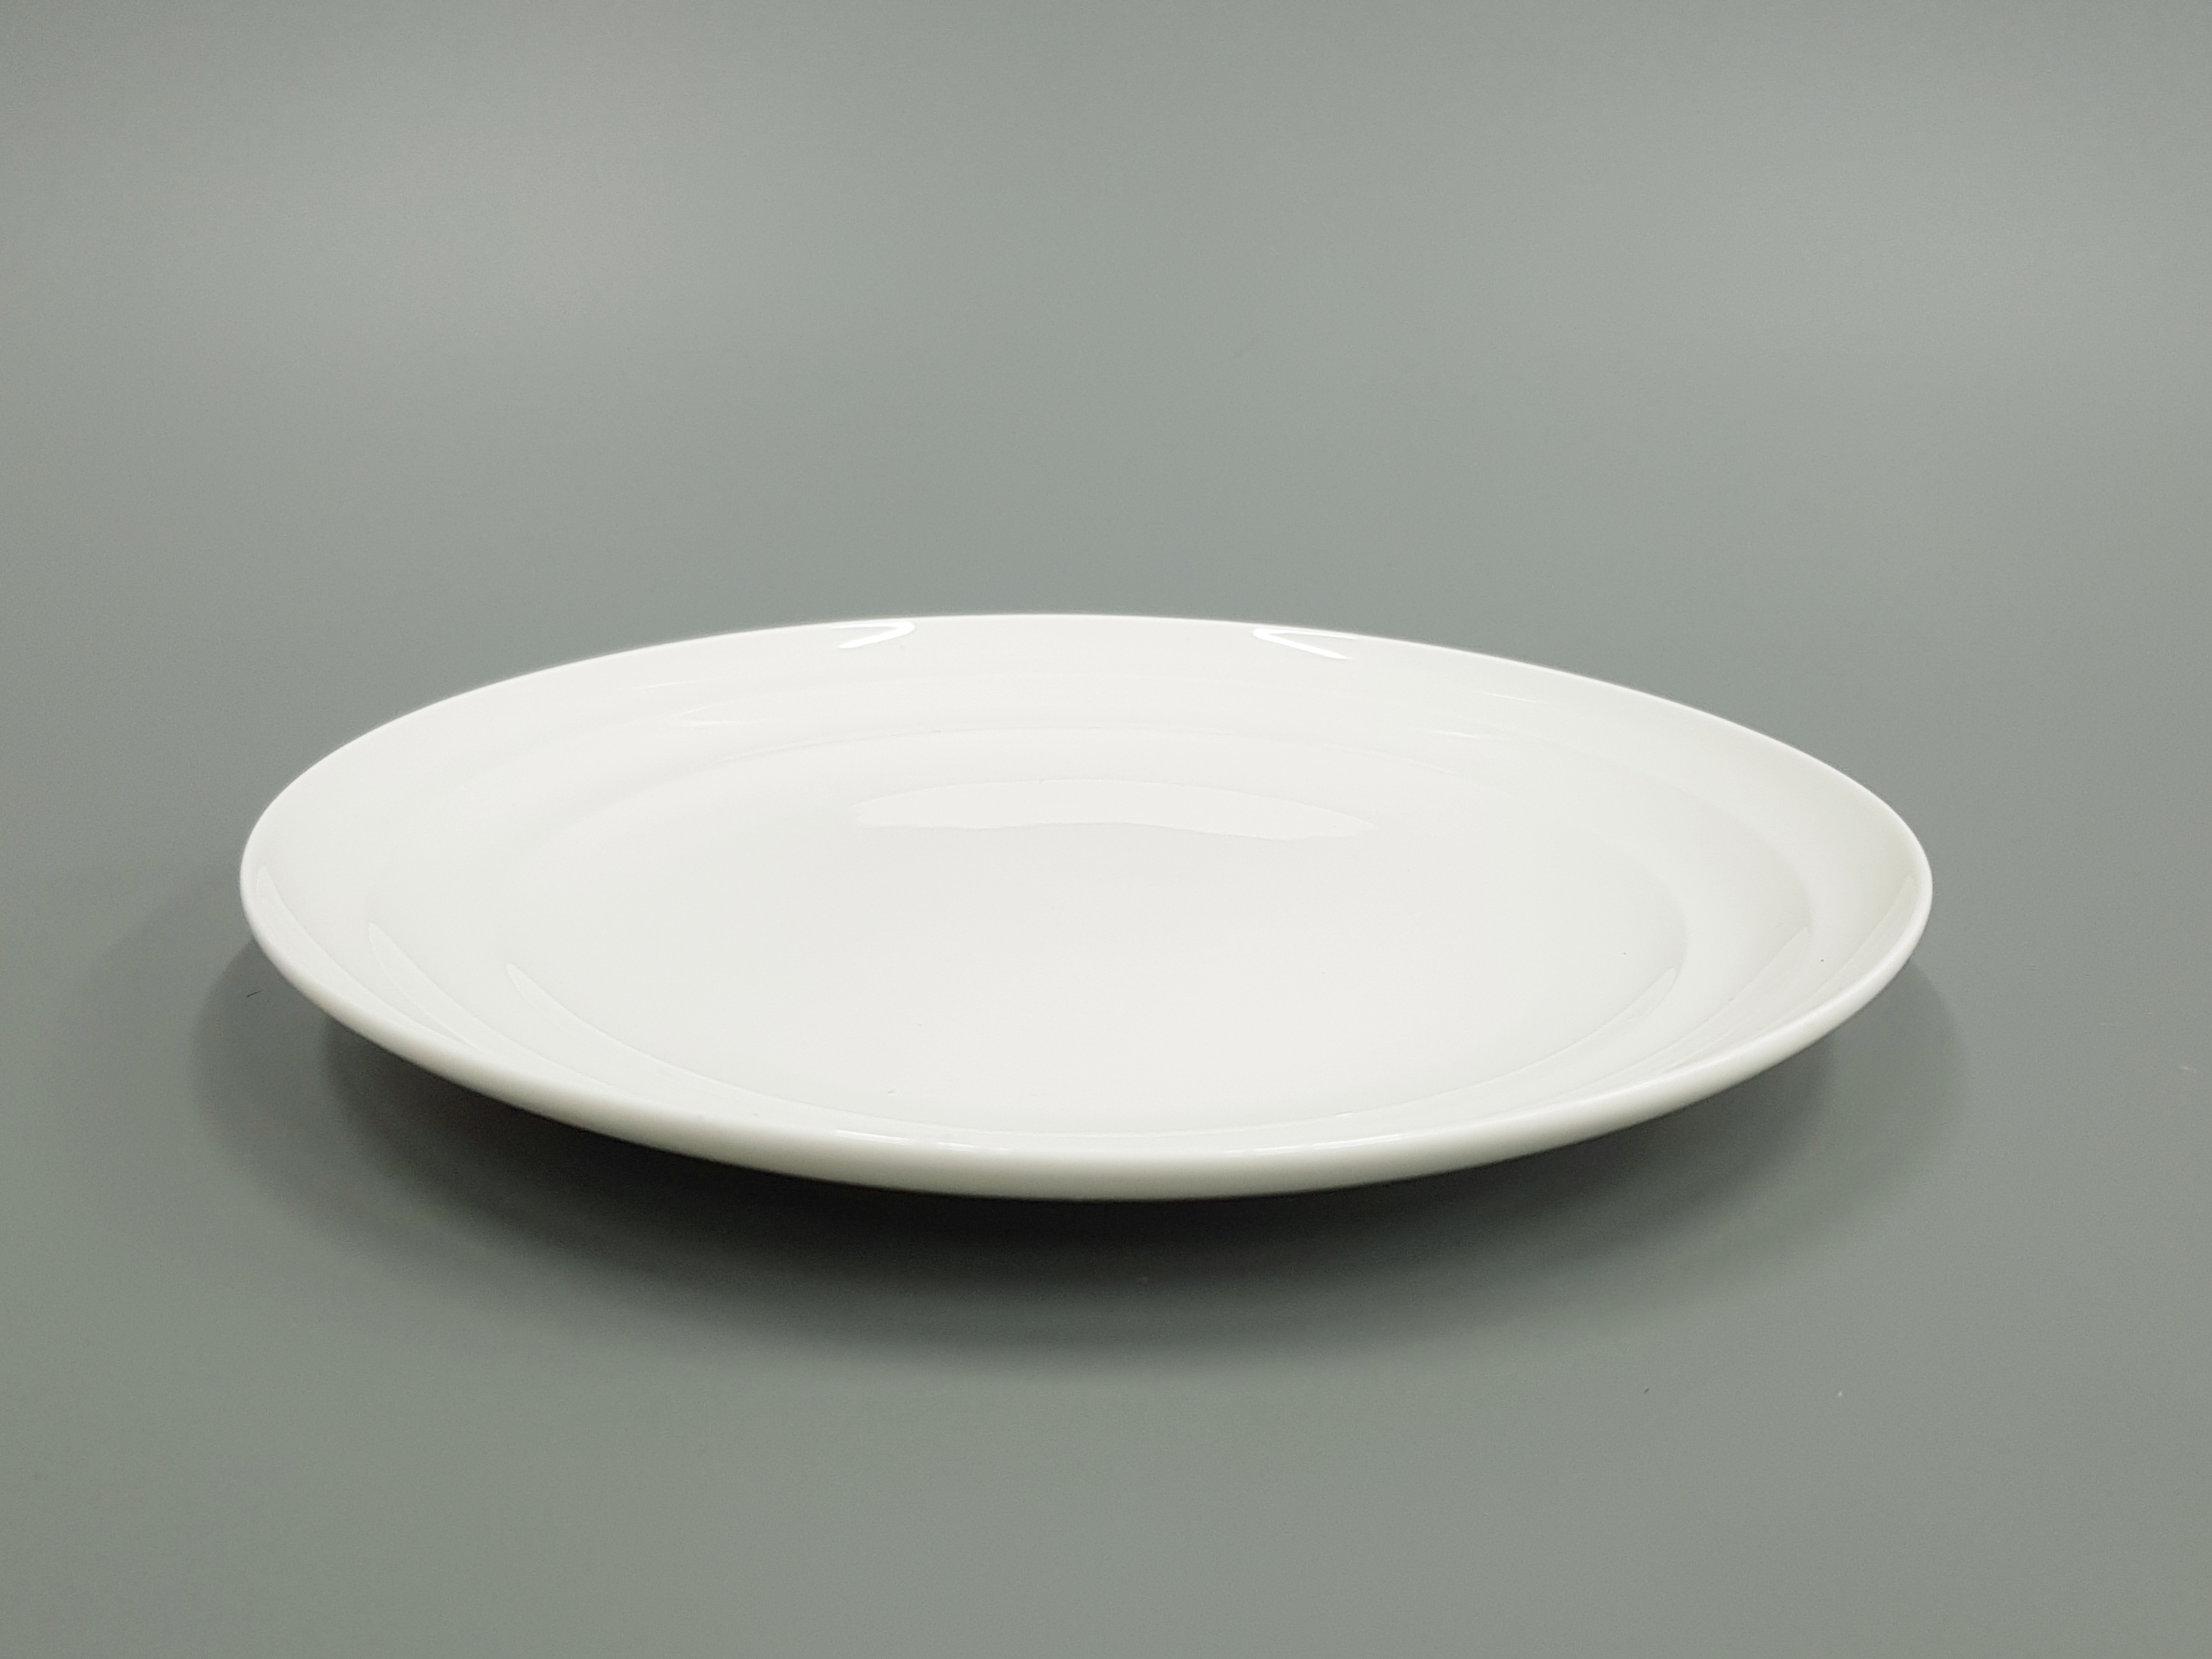 Купить хорошие тарелки. Тарелка плоская круглая 9,5" 24см, 6/36 100бел-твч9,5. Тарелка плоская круглая 18см (гладкая) белая OLS-118 Shanghai co. Plate 1009/p Dec.232/4 керамическая тарелка.